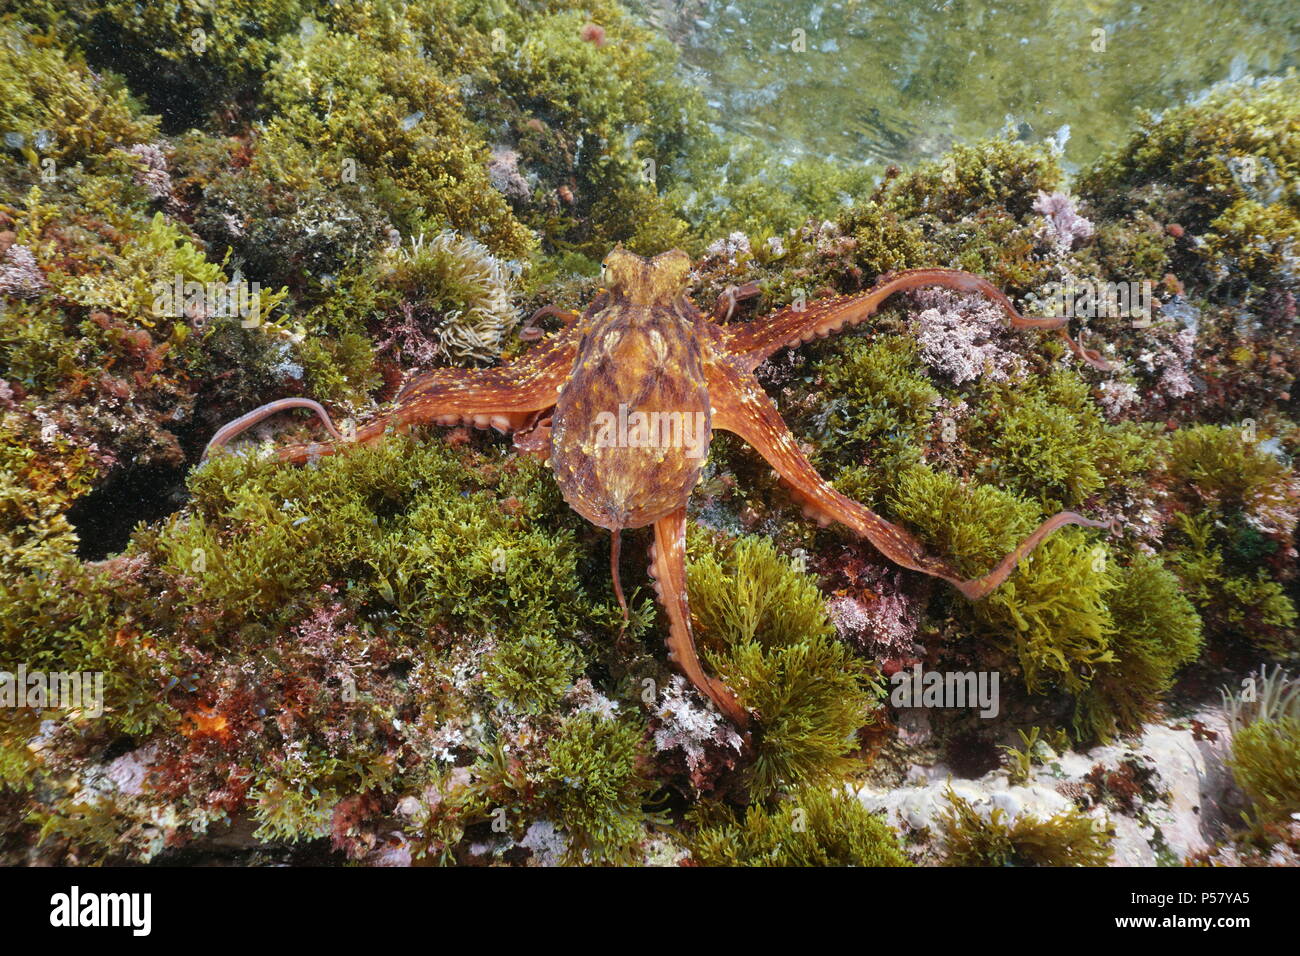 Un poulpe commun, Octopus vulgaris, sous l'eau sur la roche avec les algues dans la mer Méditerranée, Côte d'Azur, France Banque D'Images